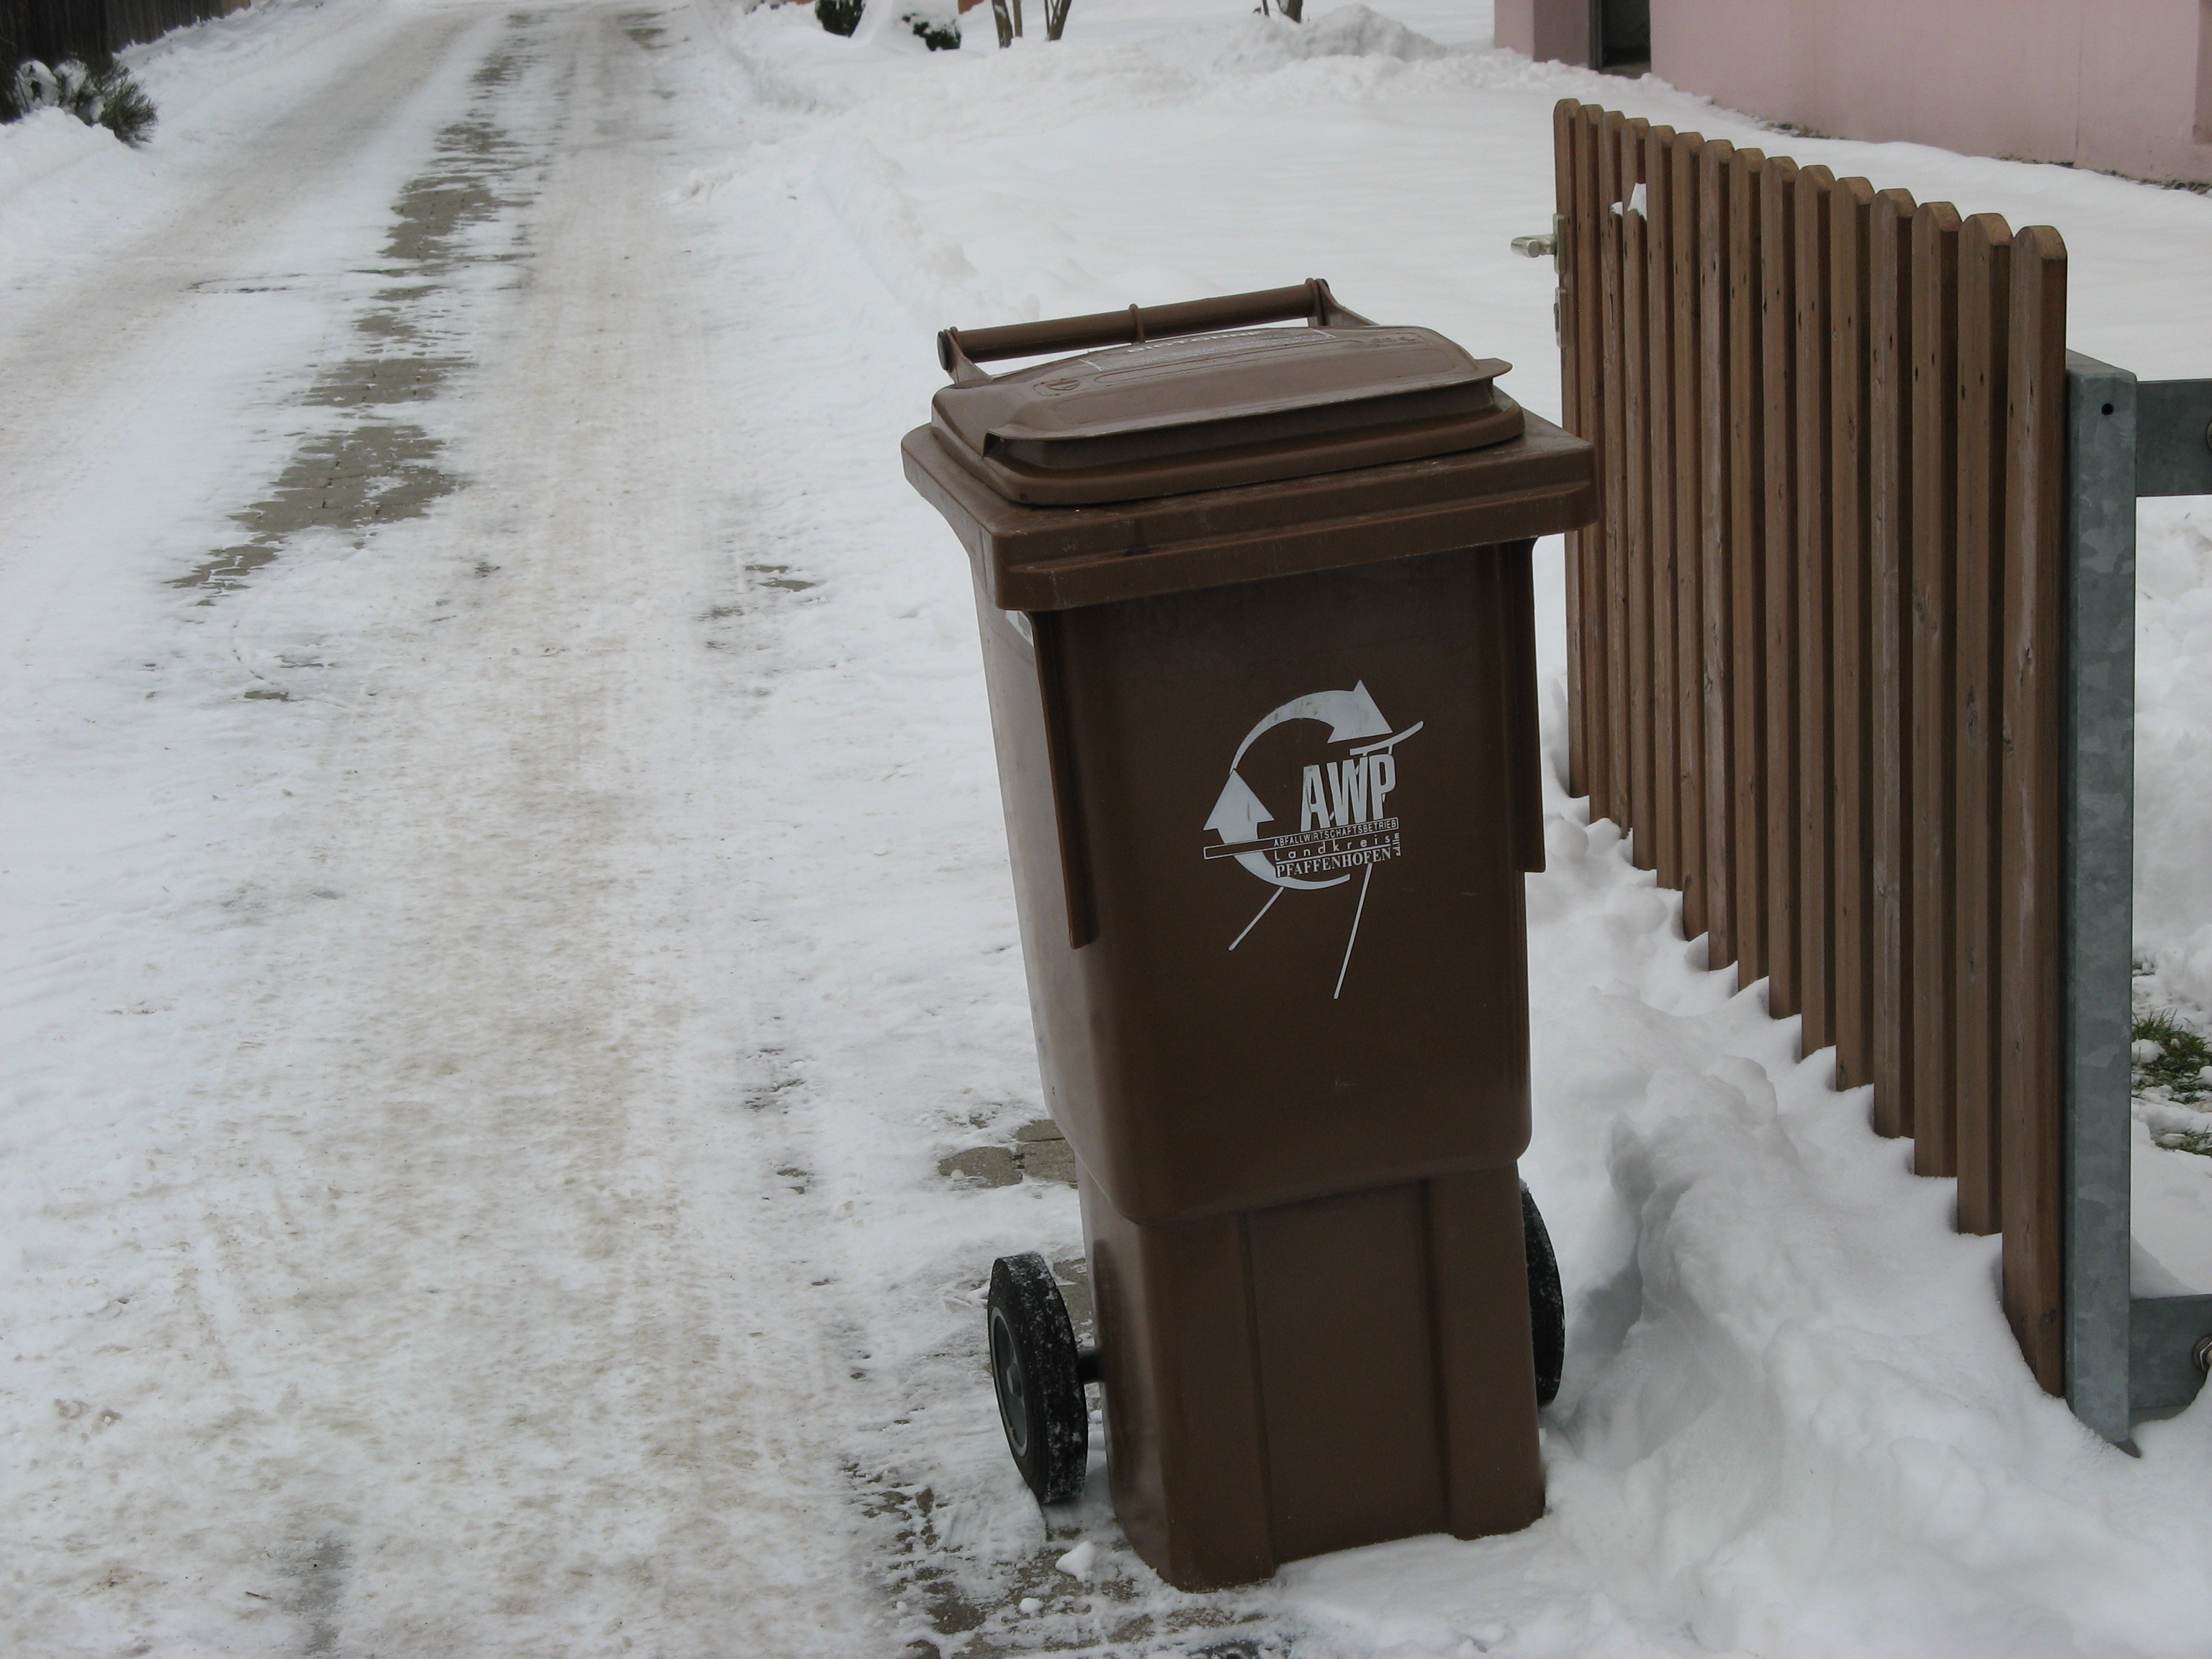 Eiszeit in der Mülltonne - AWP informiert über den richtigen Umgang mit der Biotonne bei Frostwetter